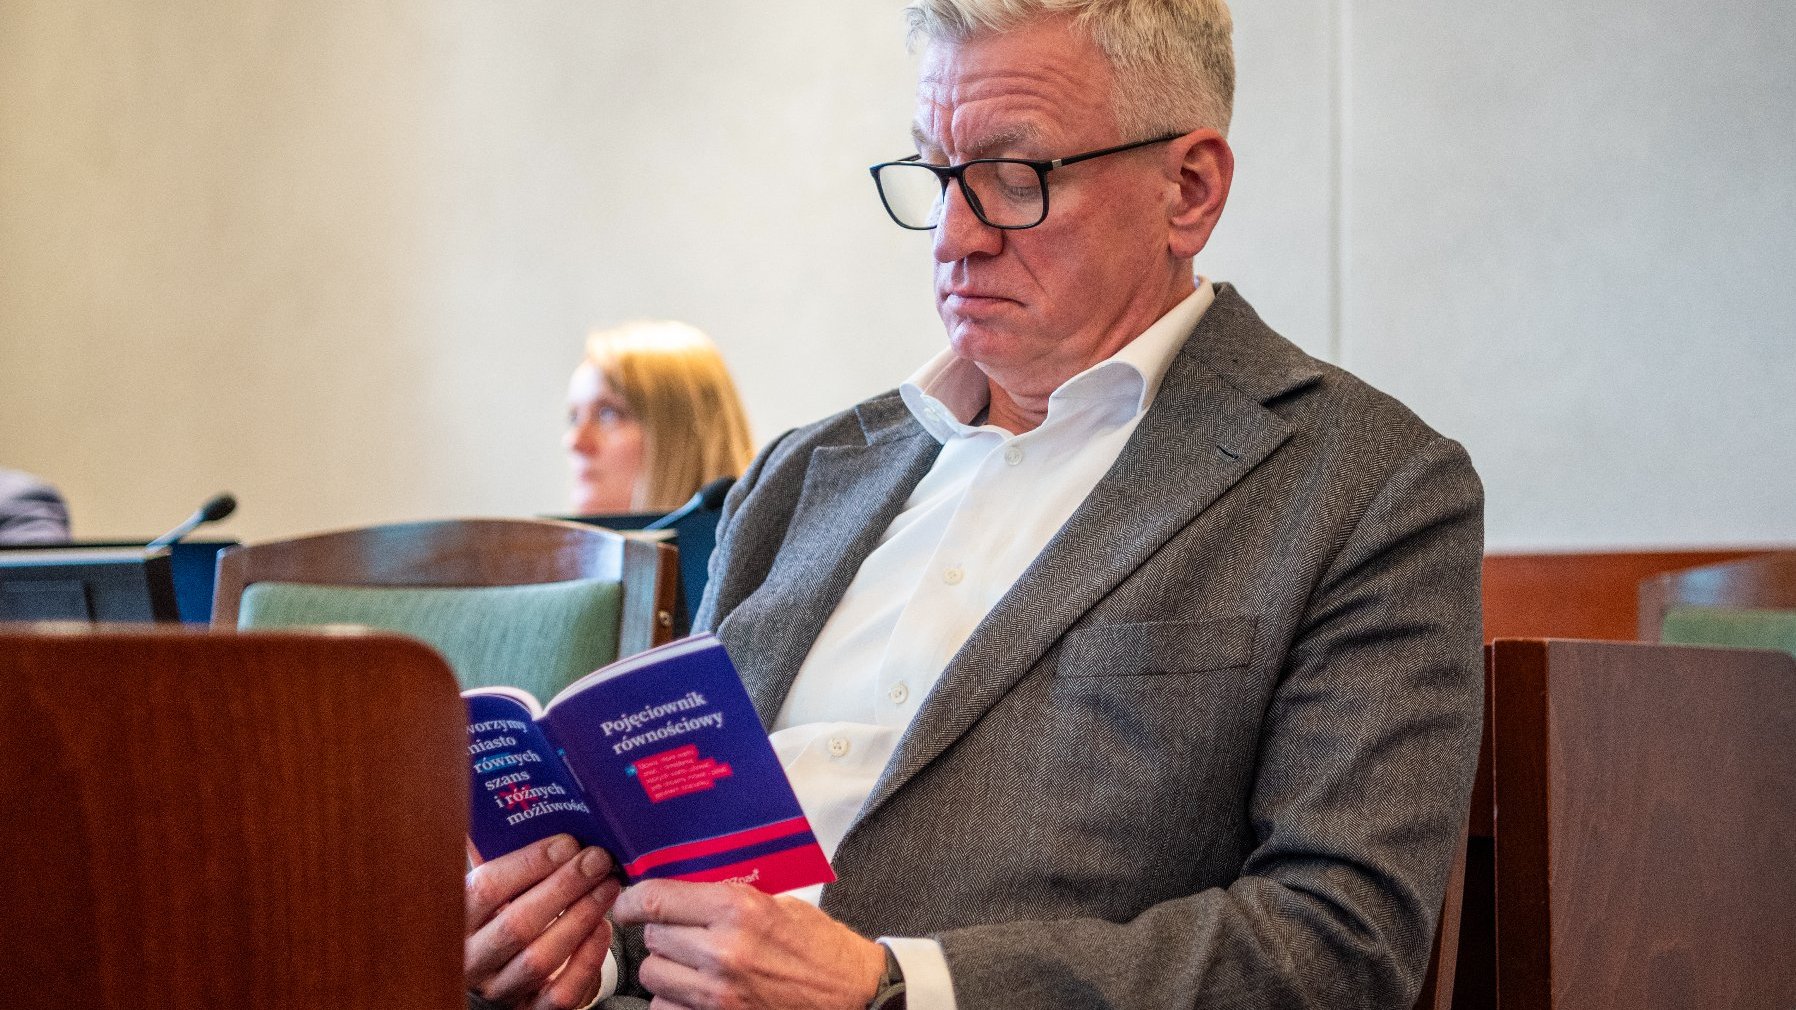 Na zdjęciu prezydent Poznania czytający pojęciownik